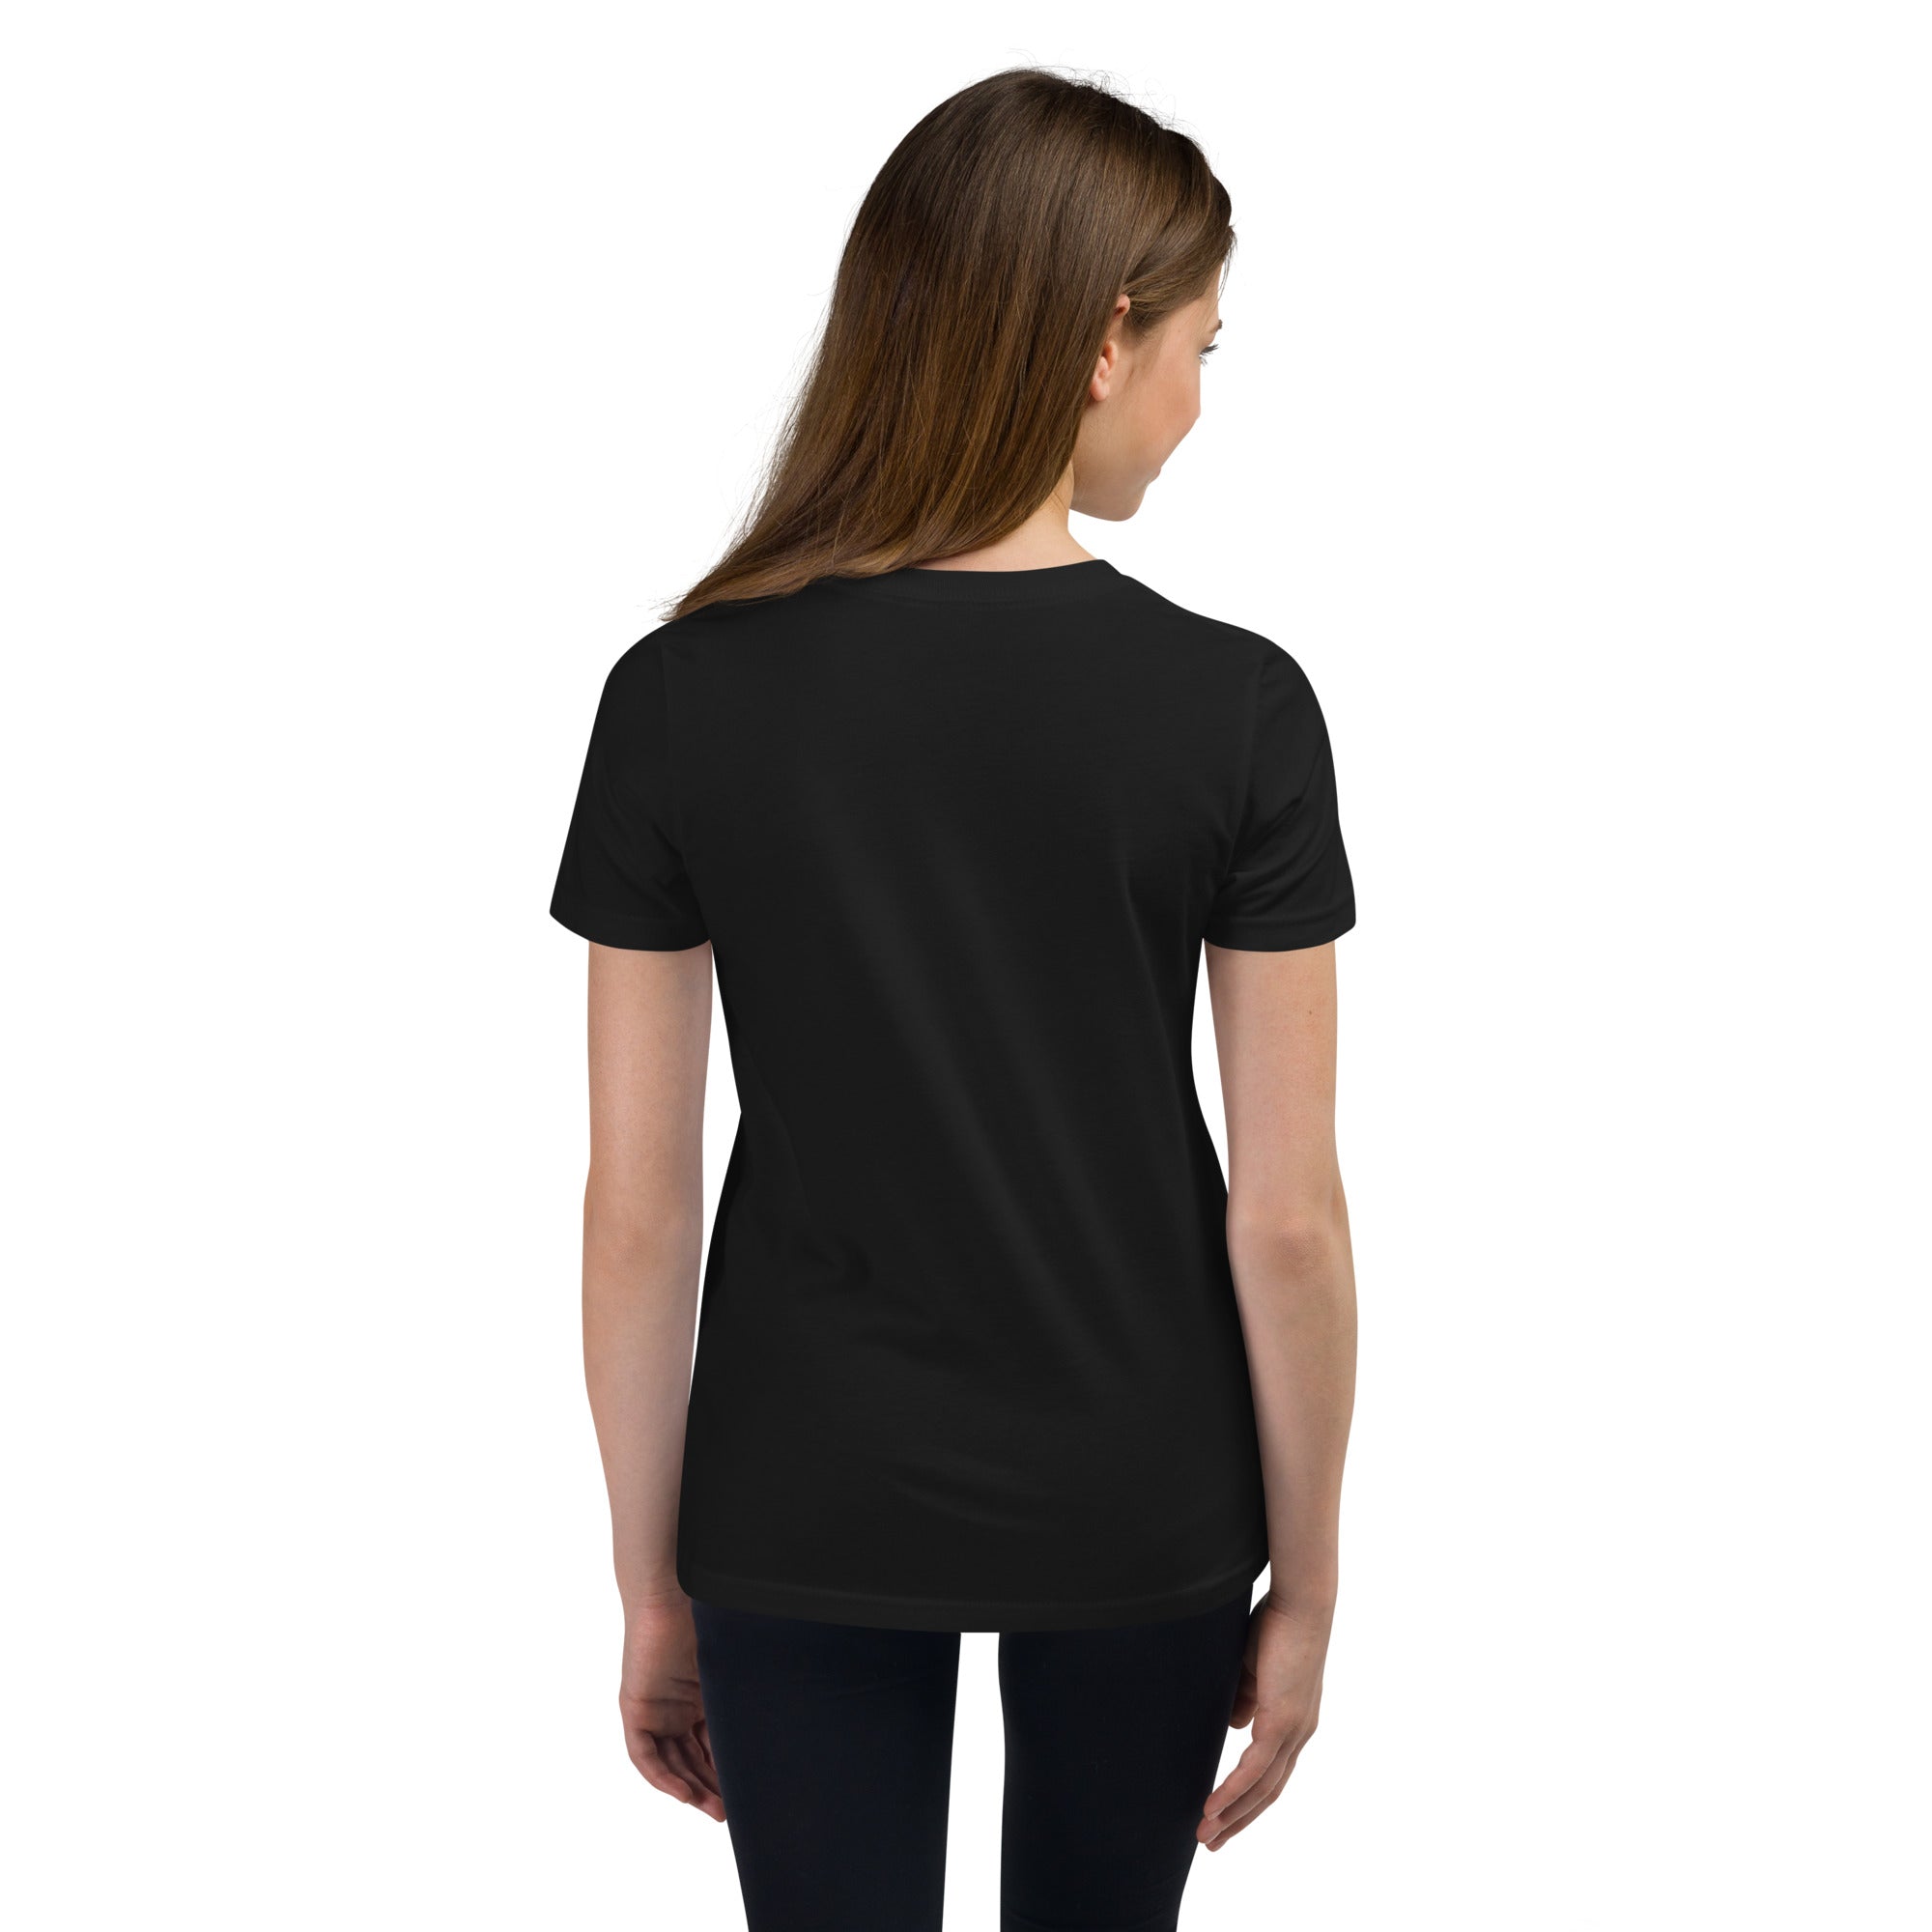 A/F R/W Logo - Black Youth Short Sleeve T-Shirt